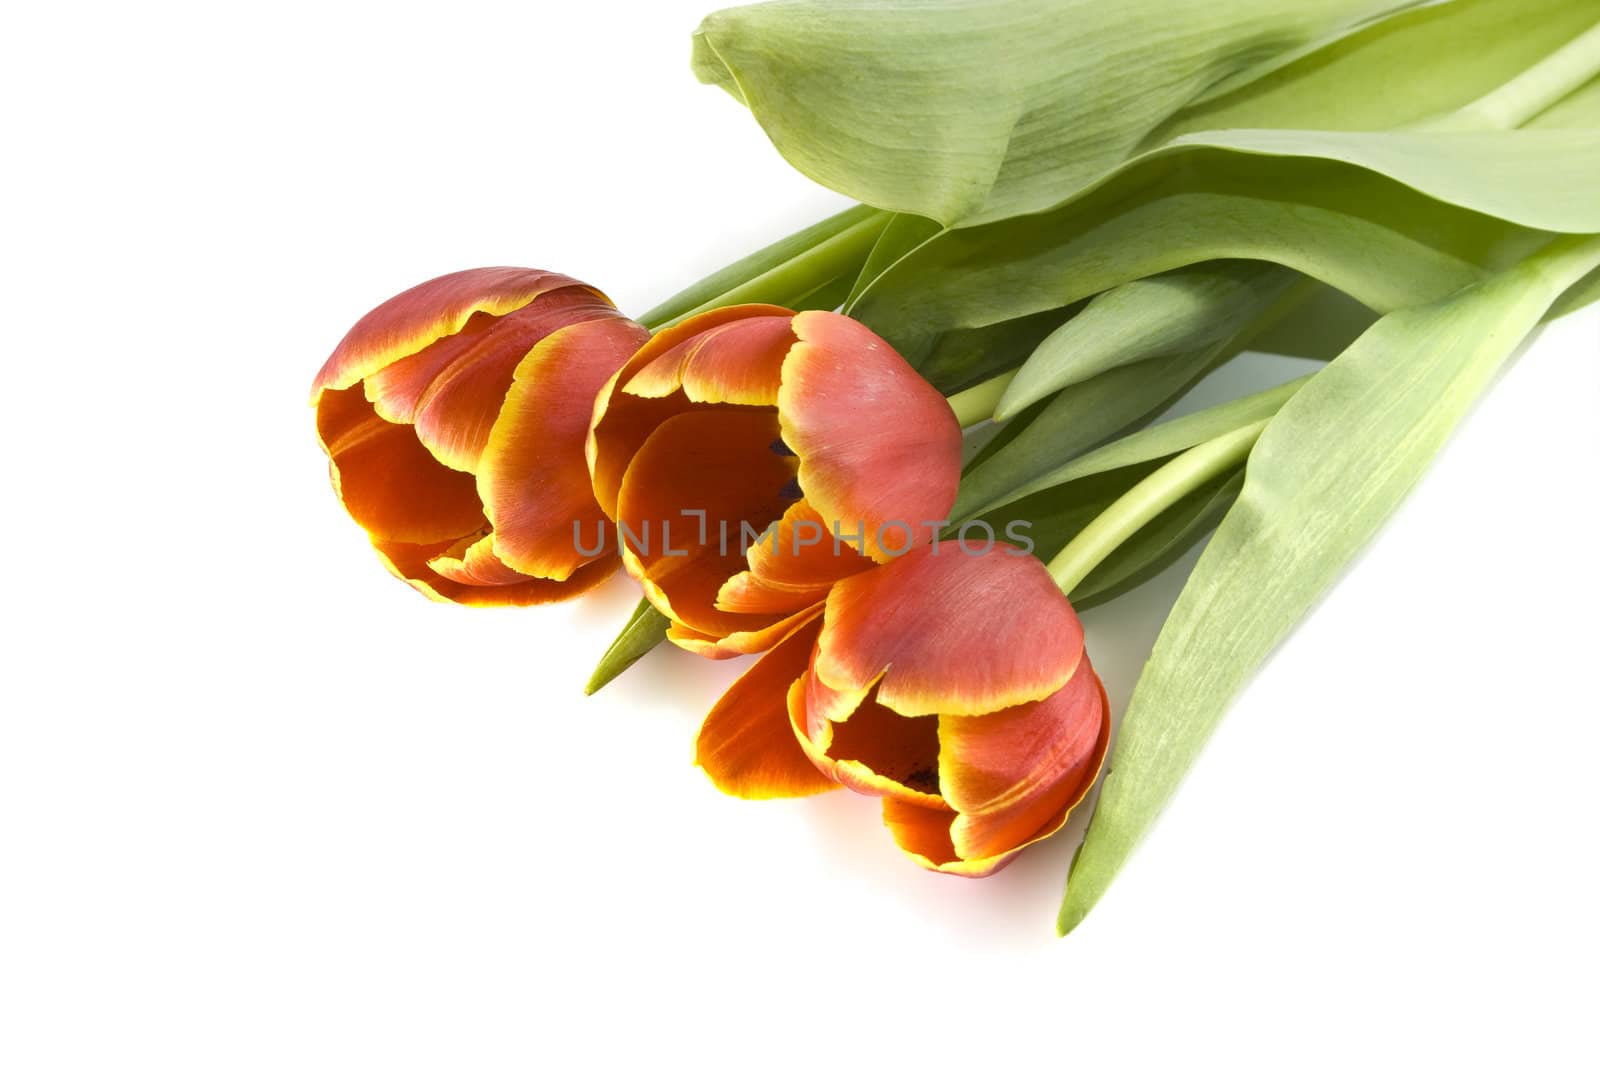 Tulips by Dan70